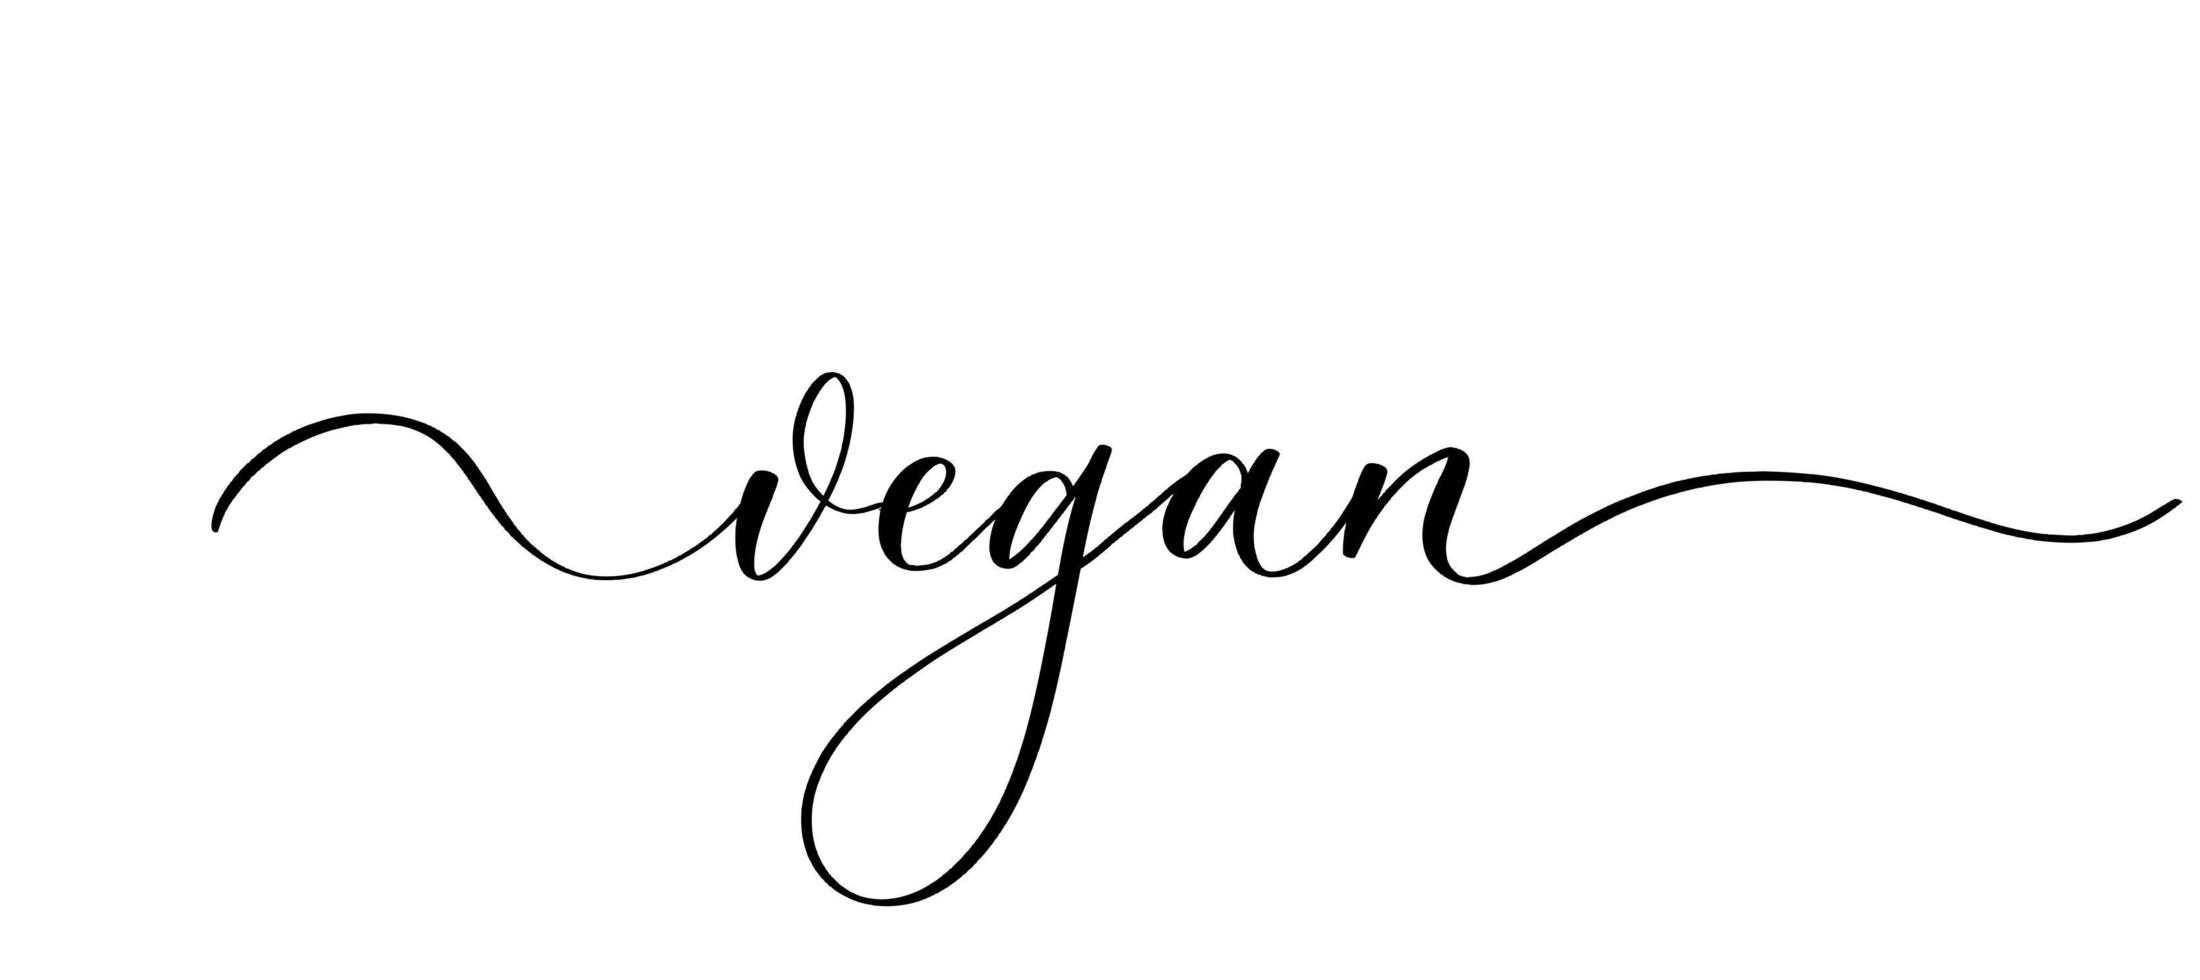 vegan - inscrição caligráfica vetorial com linhas suaves. vetor